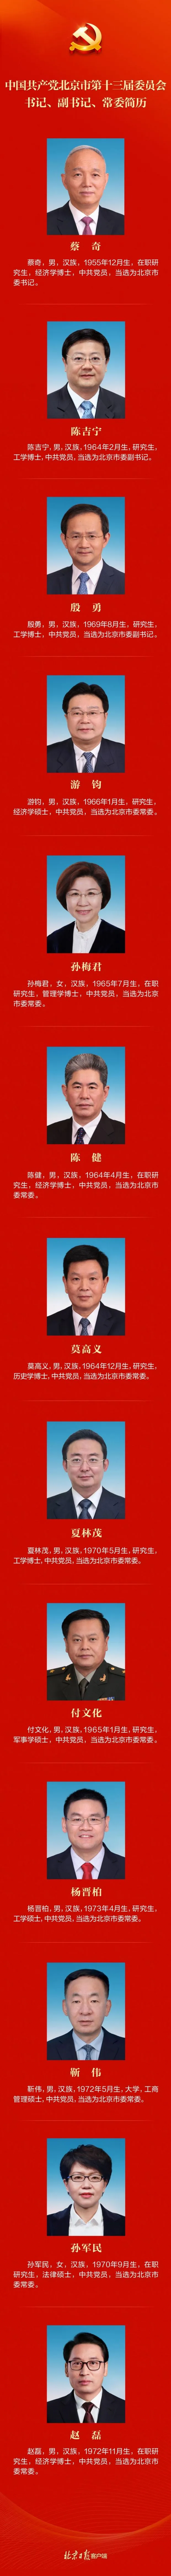 新一届北京市委常委名单 现任北京市委领导班子成员